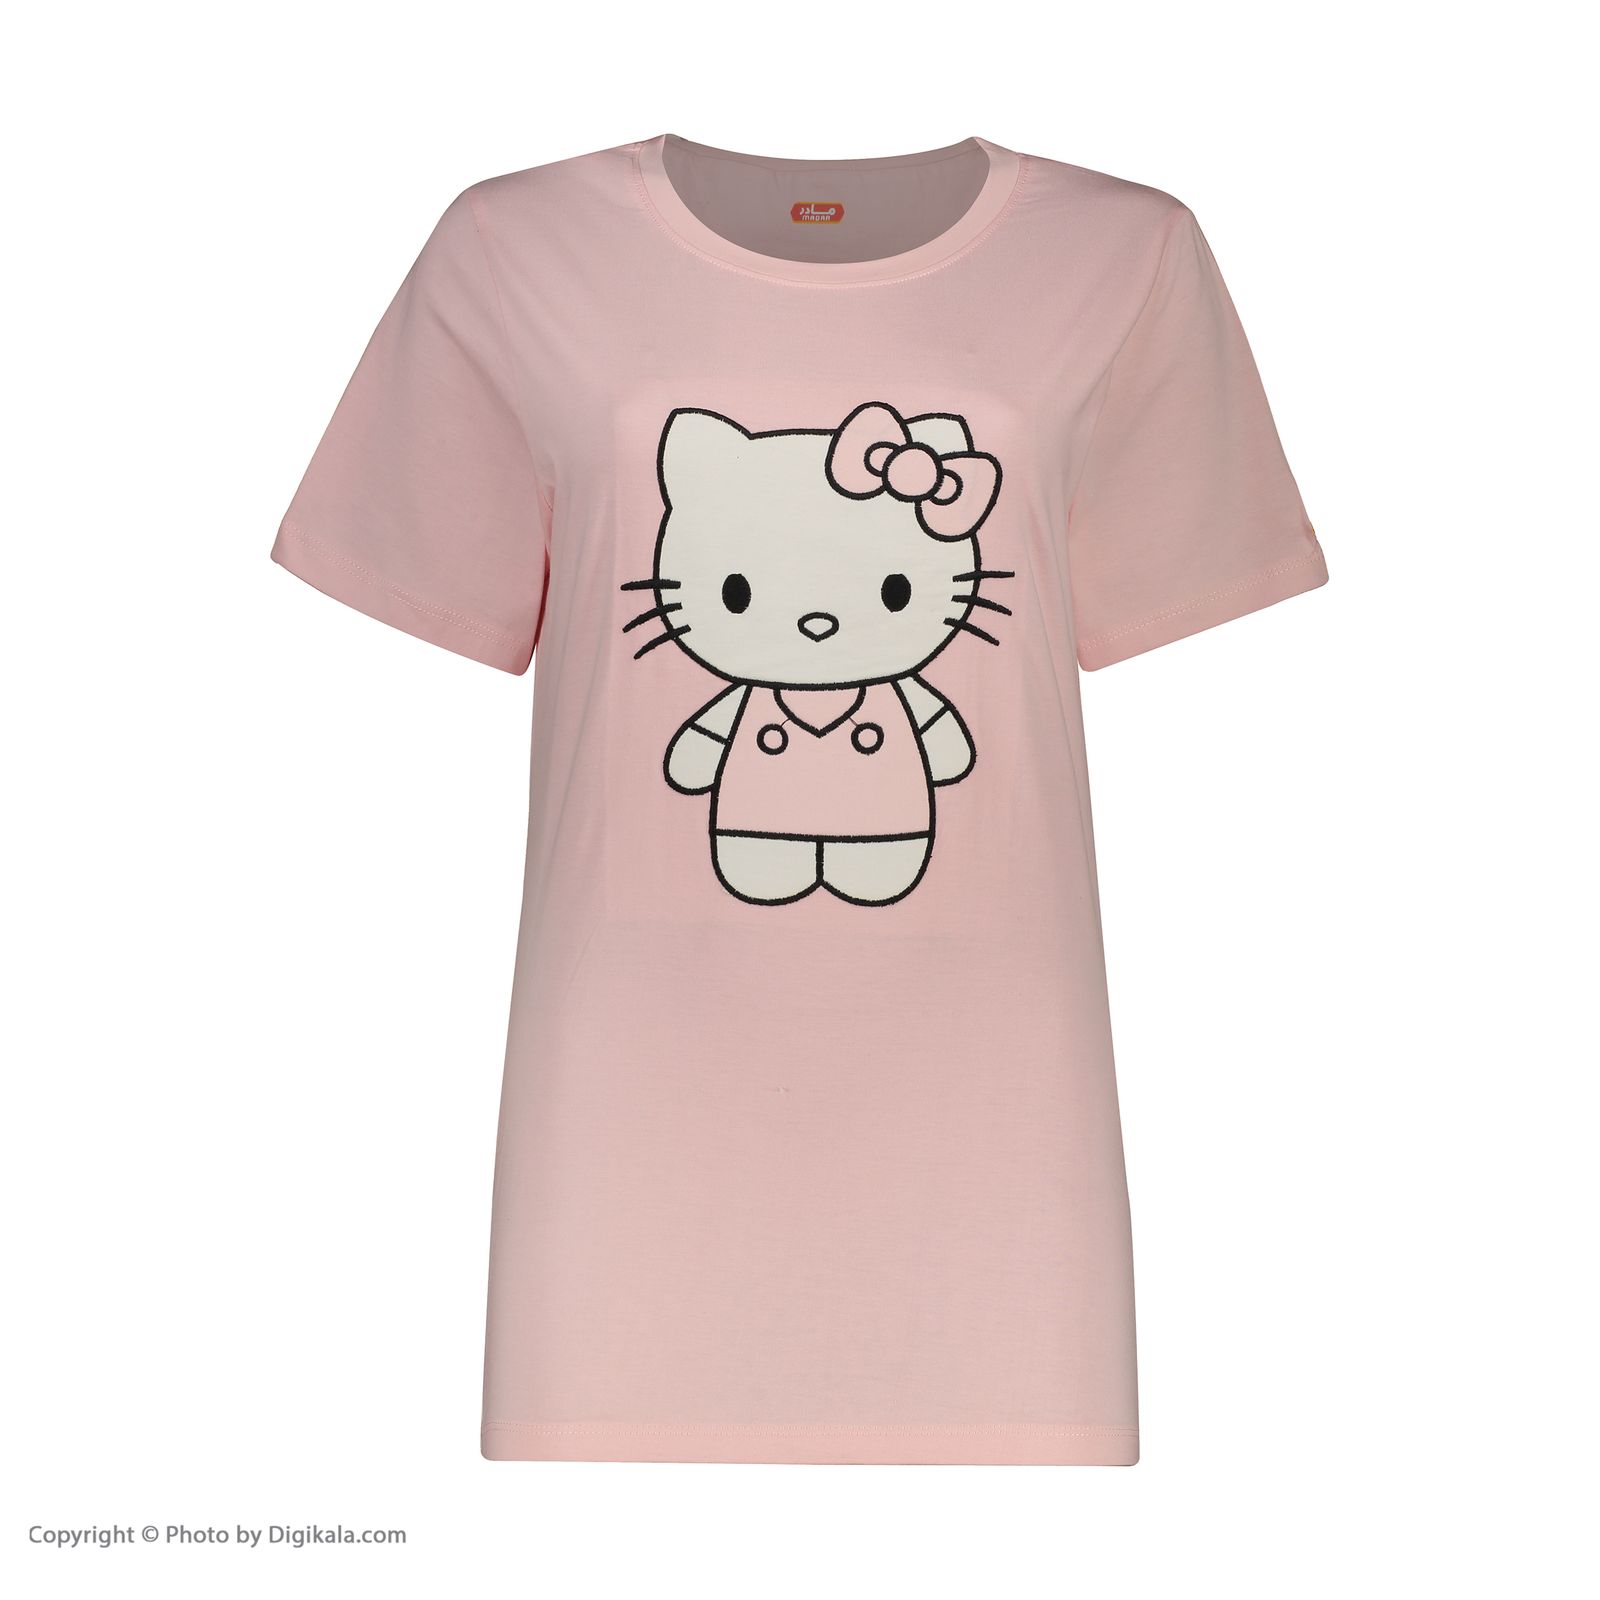 ست تی شرت و شلوار زنانه مادر مدل Kitty405-84 -  - 6